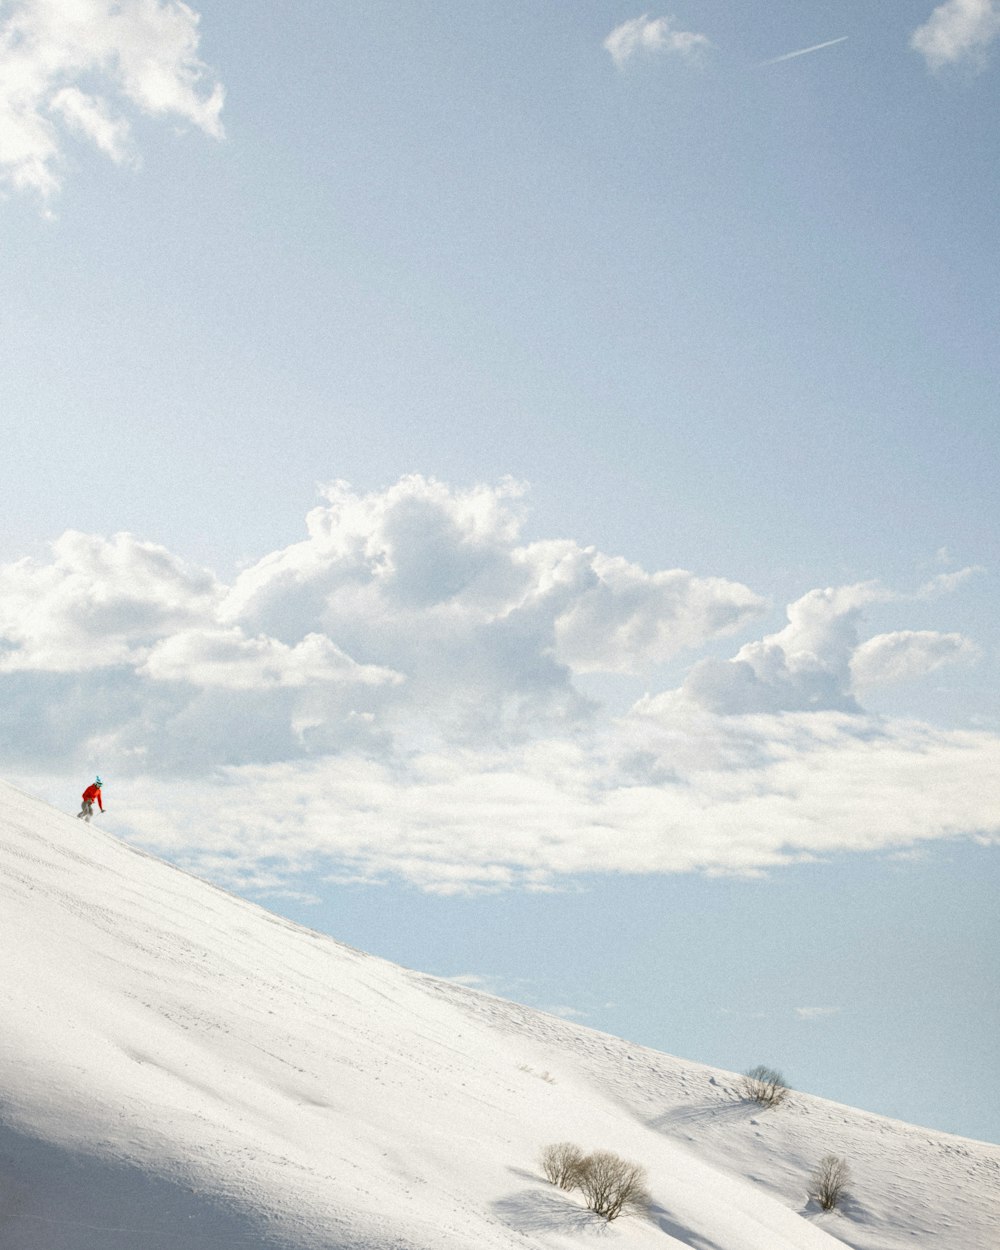 Una persona está esquiando por una colina nevada